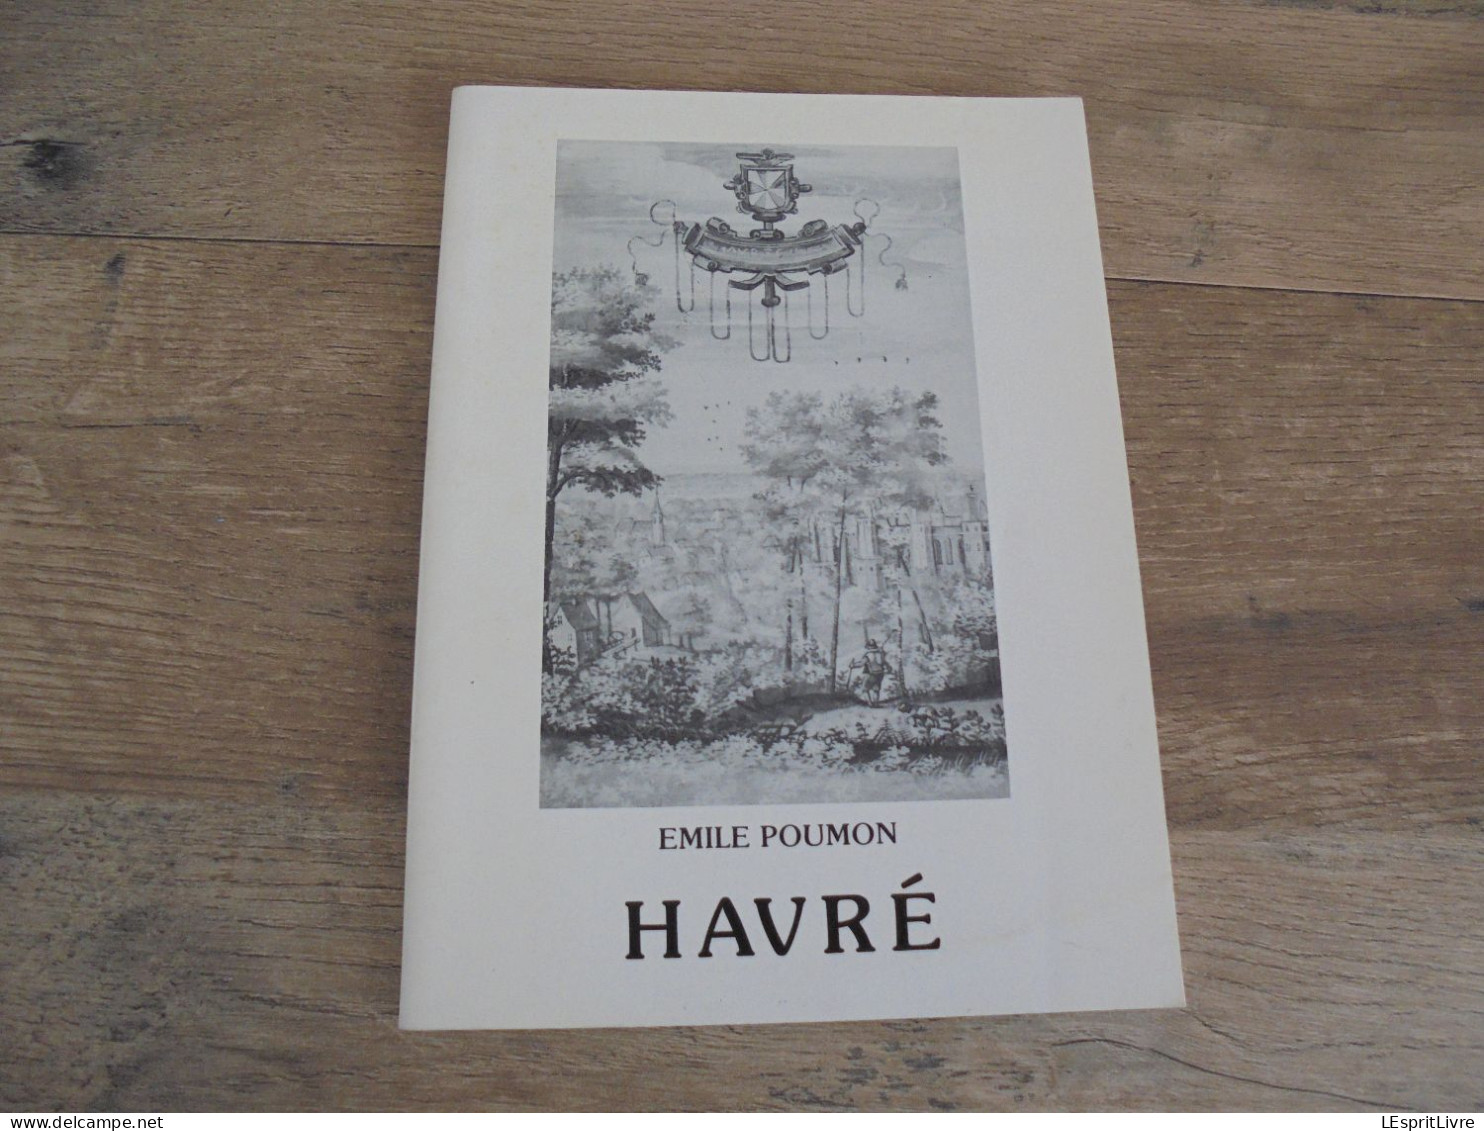 HAVRE Emile Poumon Exemplaire N° 7 / 250 Régionalisme Hainaut Chatéeu Havré - Belgium